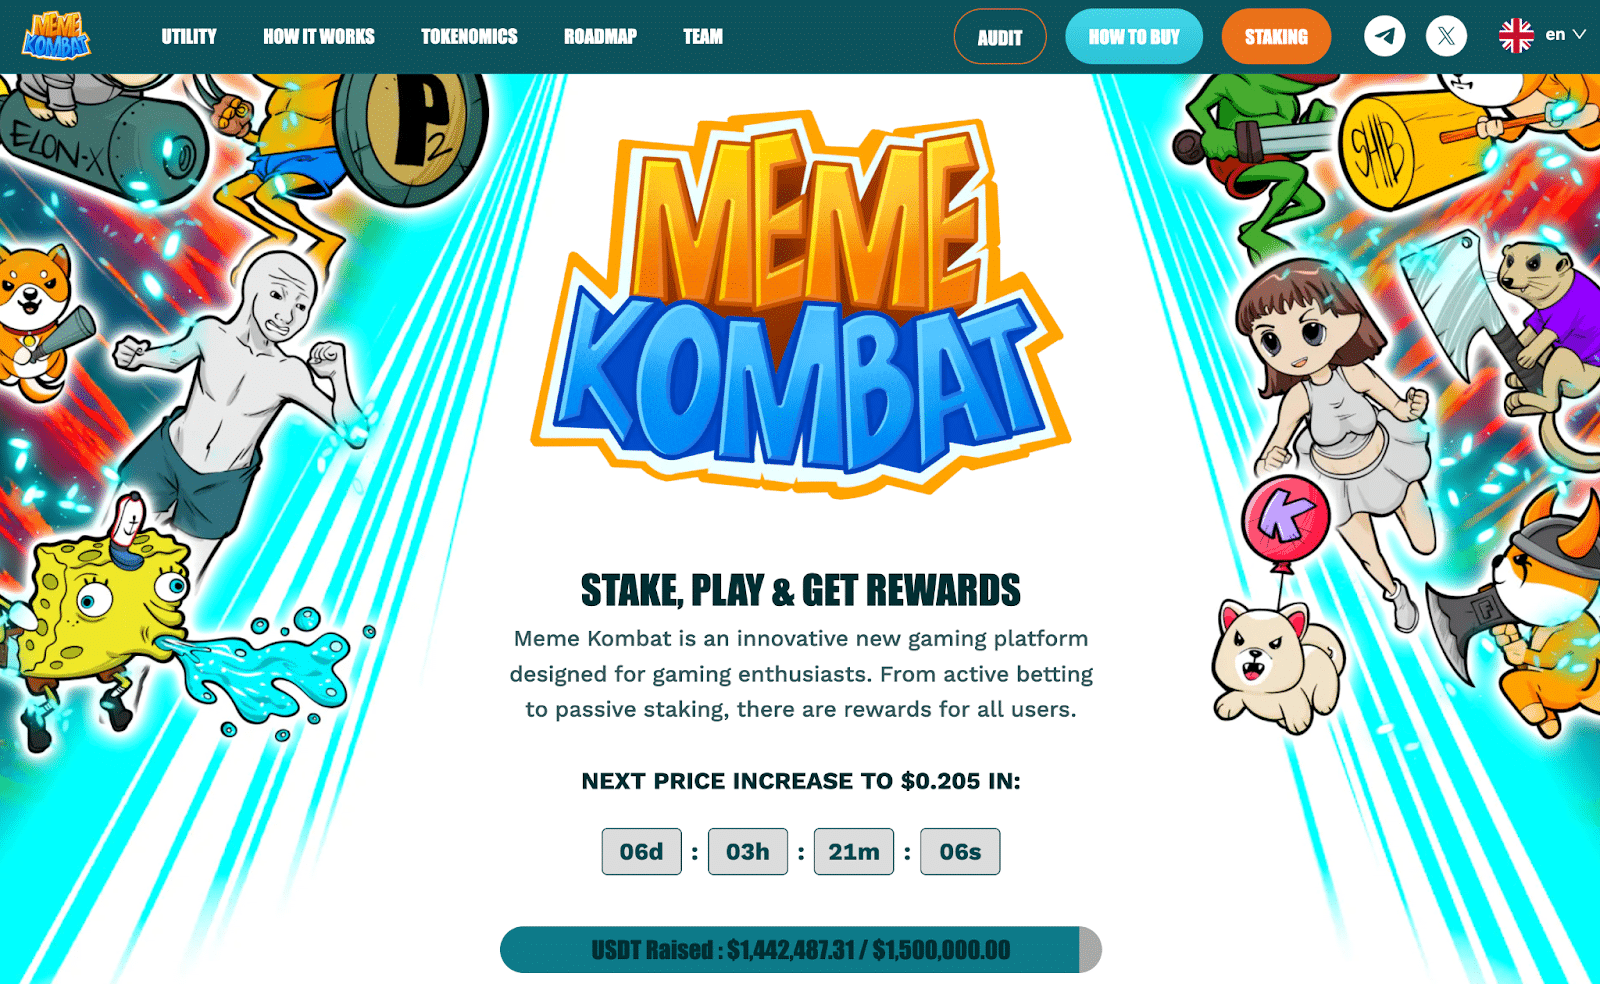 黄金甲体育官网Pepepe币价格上涨25%Meme Kombat在独特的游戏平台上筹集了近150万美元　也许会有100倍的增加